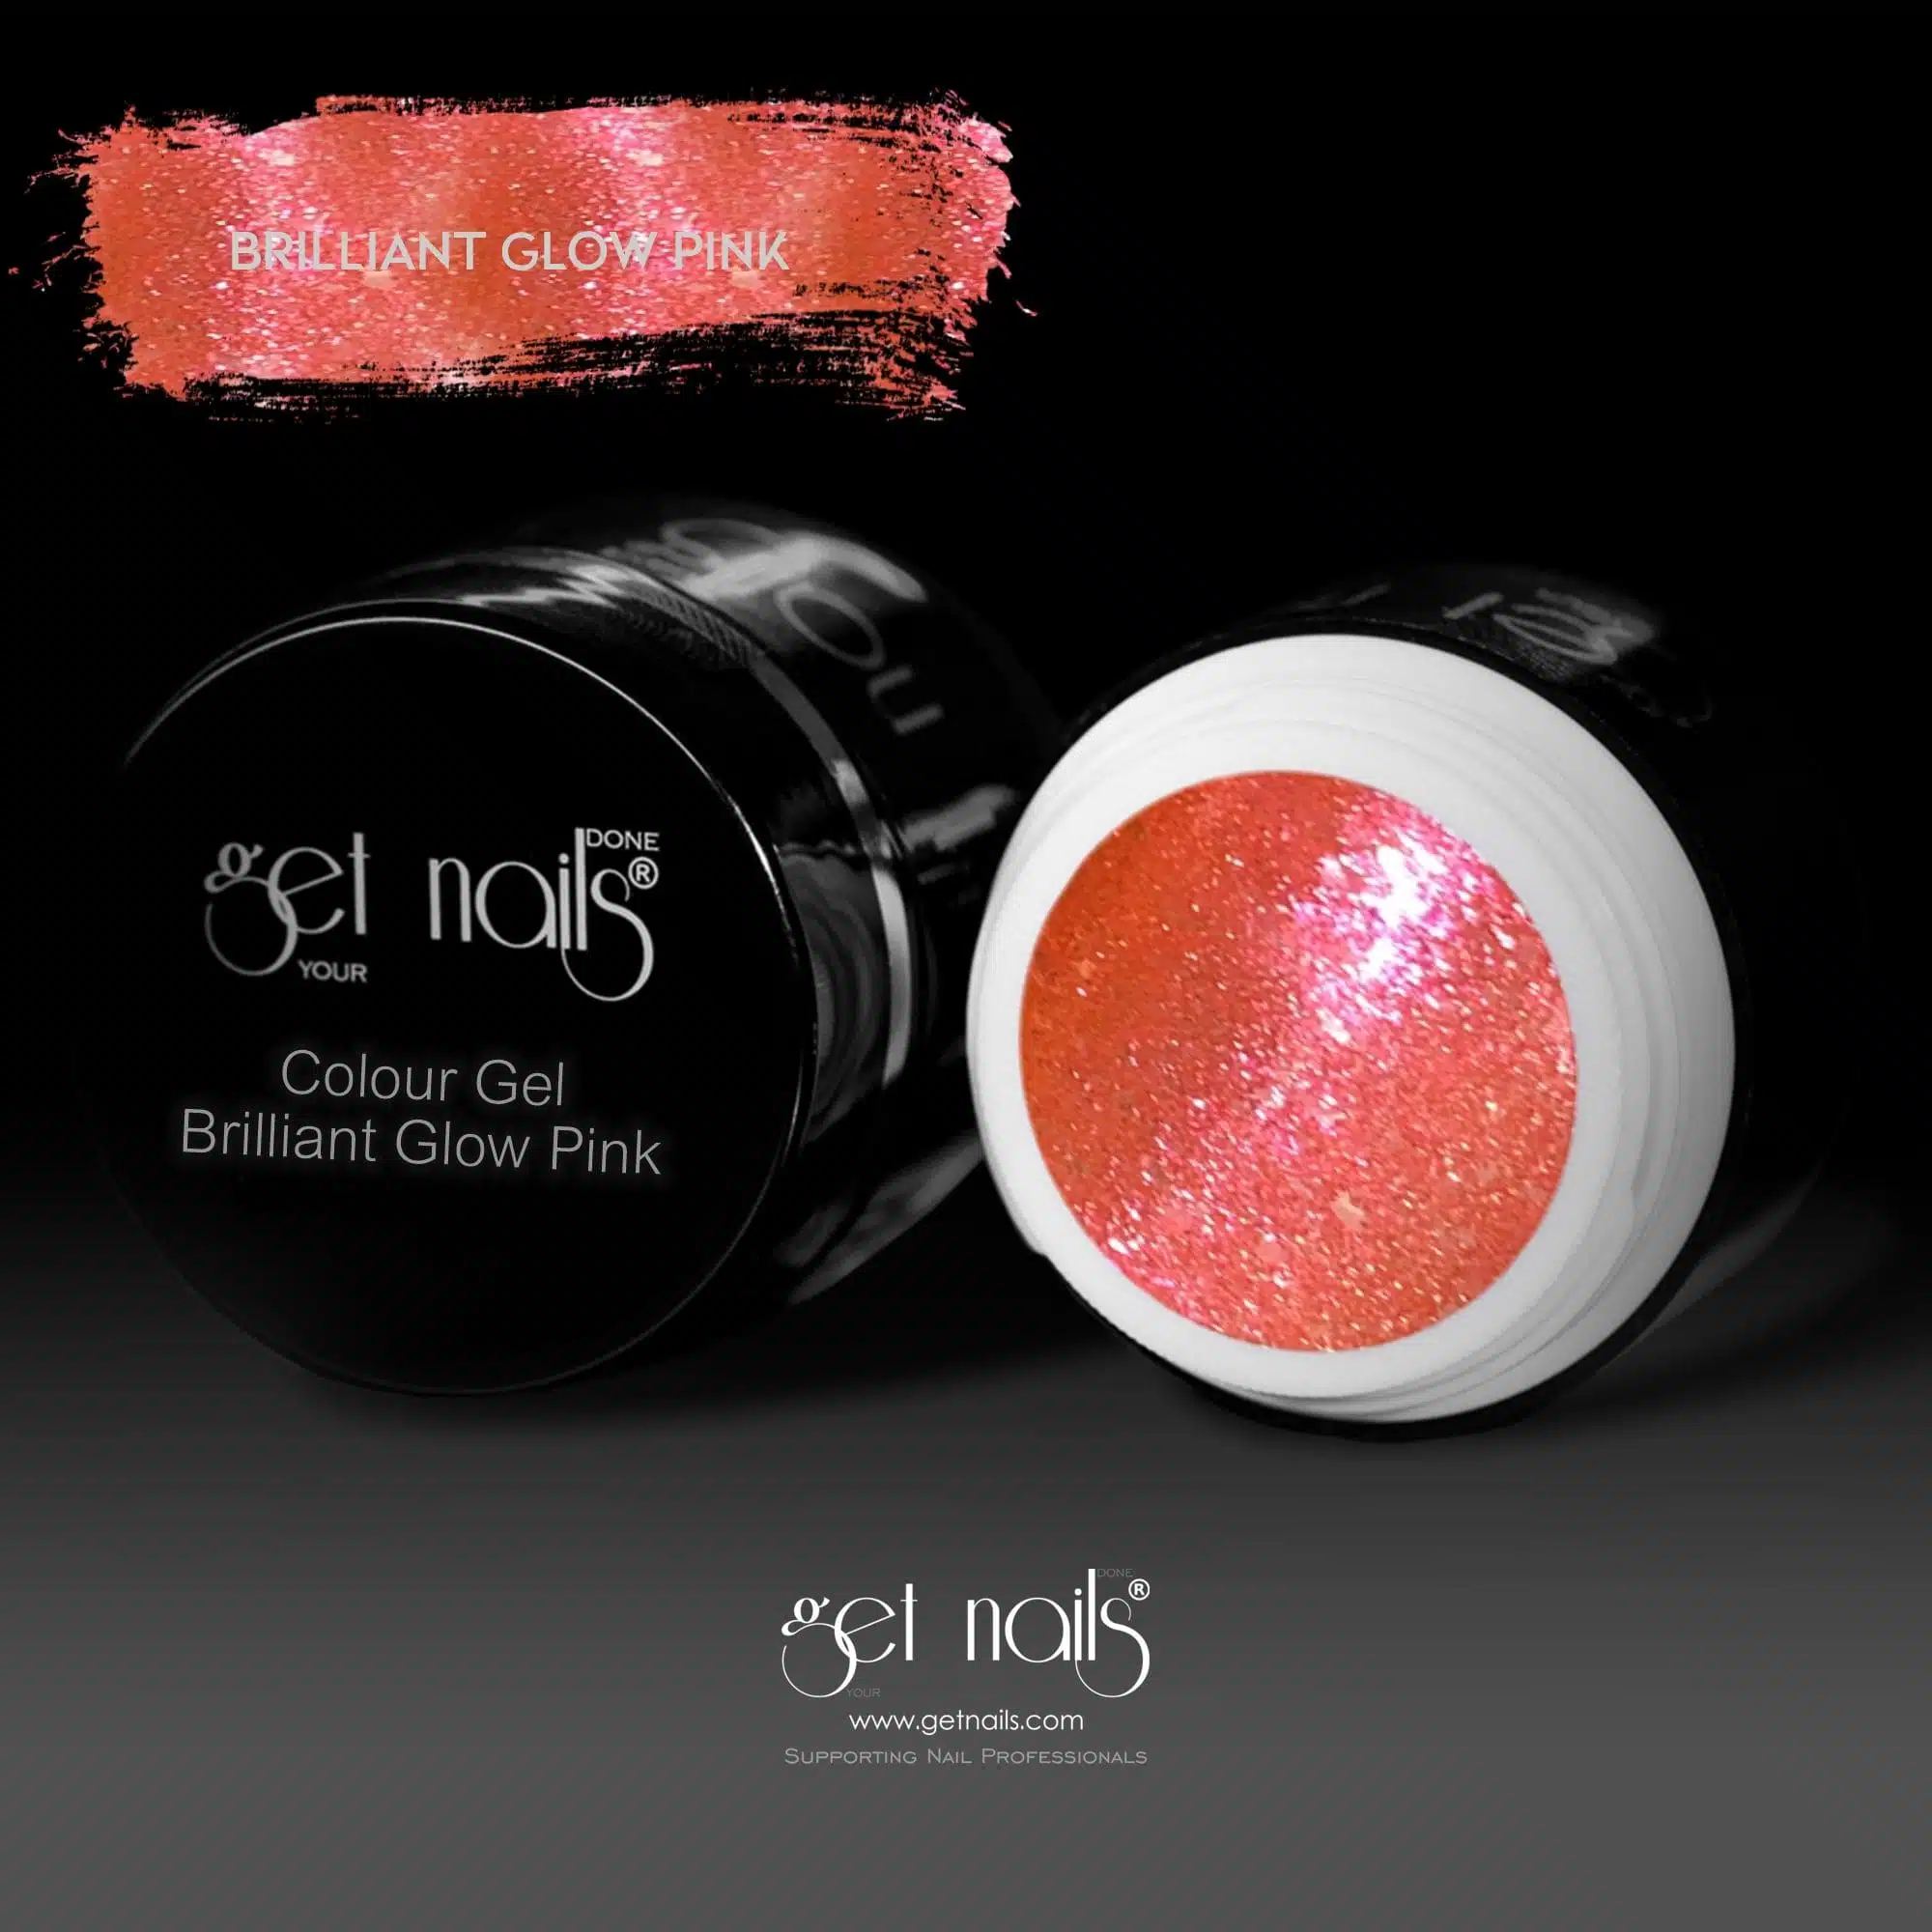 Get Nails Austria - Színes gél Brilliant Glow Pink 5g